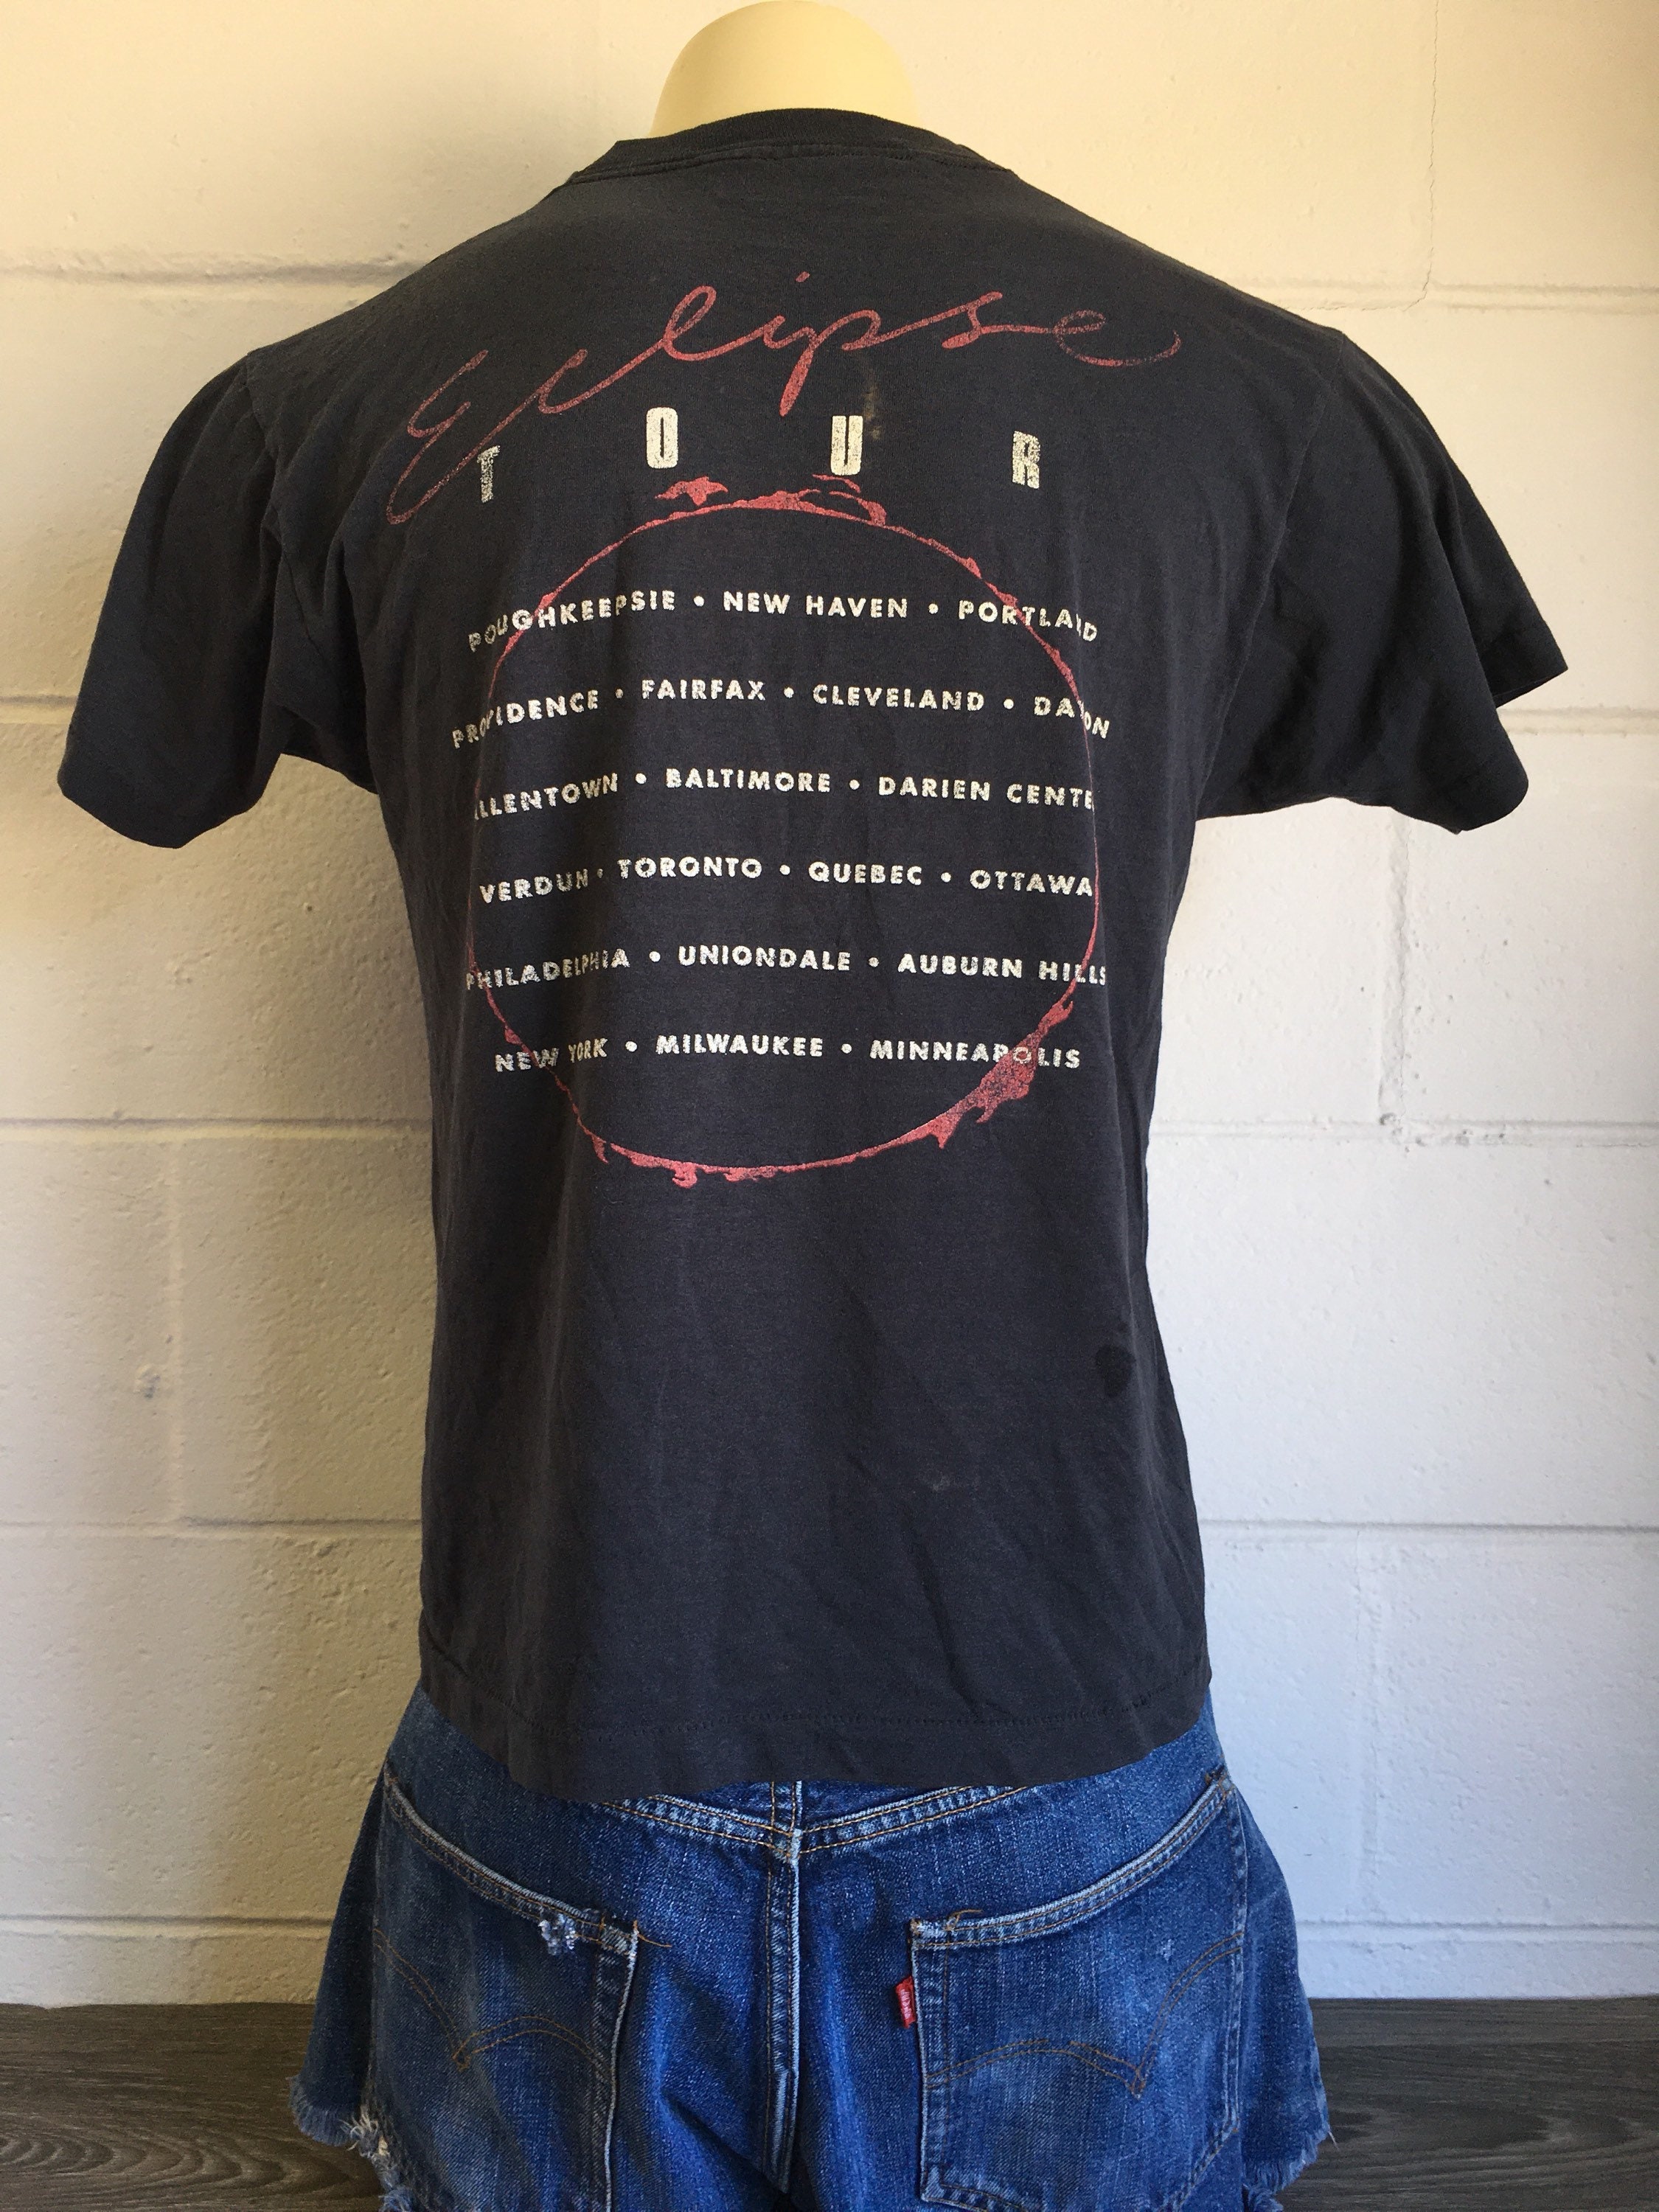 Kleding Herenkleding Overhemden & T-shirts T-shirts T-shirts met print Vintage Yngwie Malmsteen eclipse tour band gitarist legendarisch t-shirt 